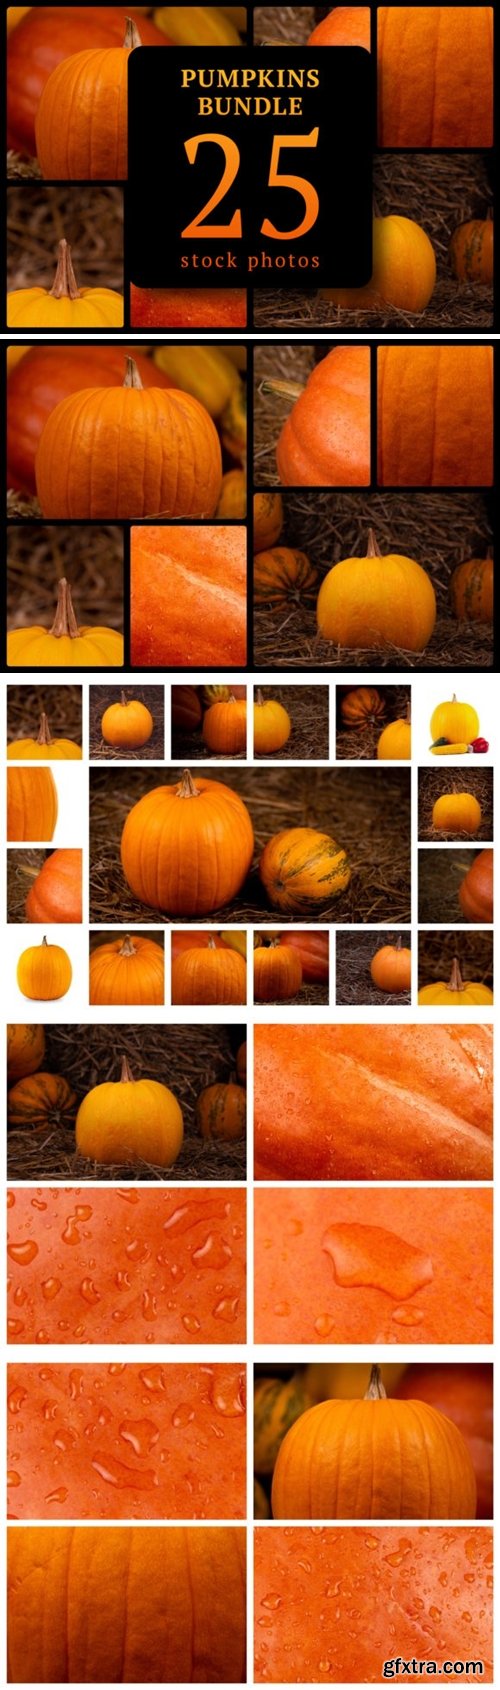 Pumpkins Bundle 25 Stock Photos 6089651